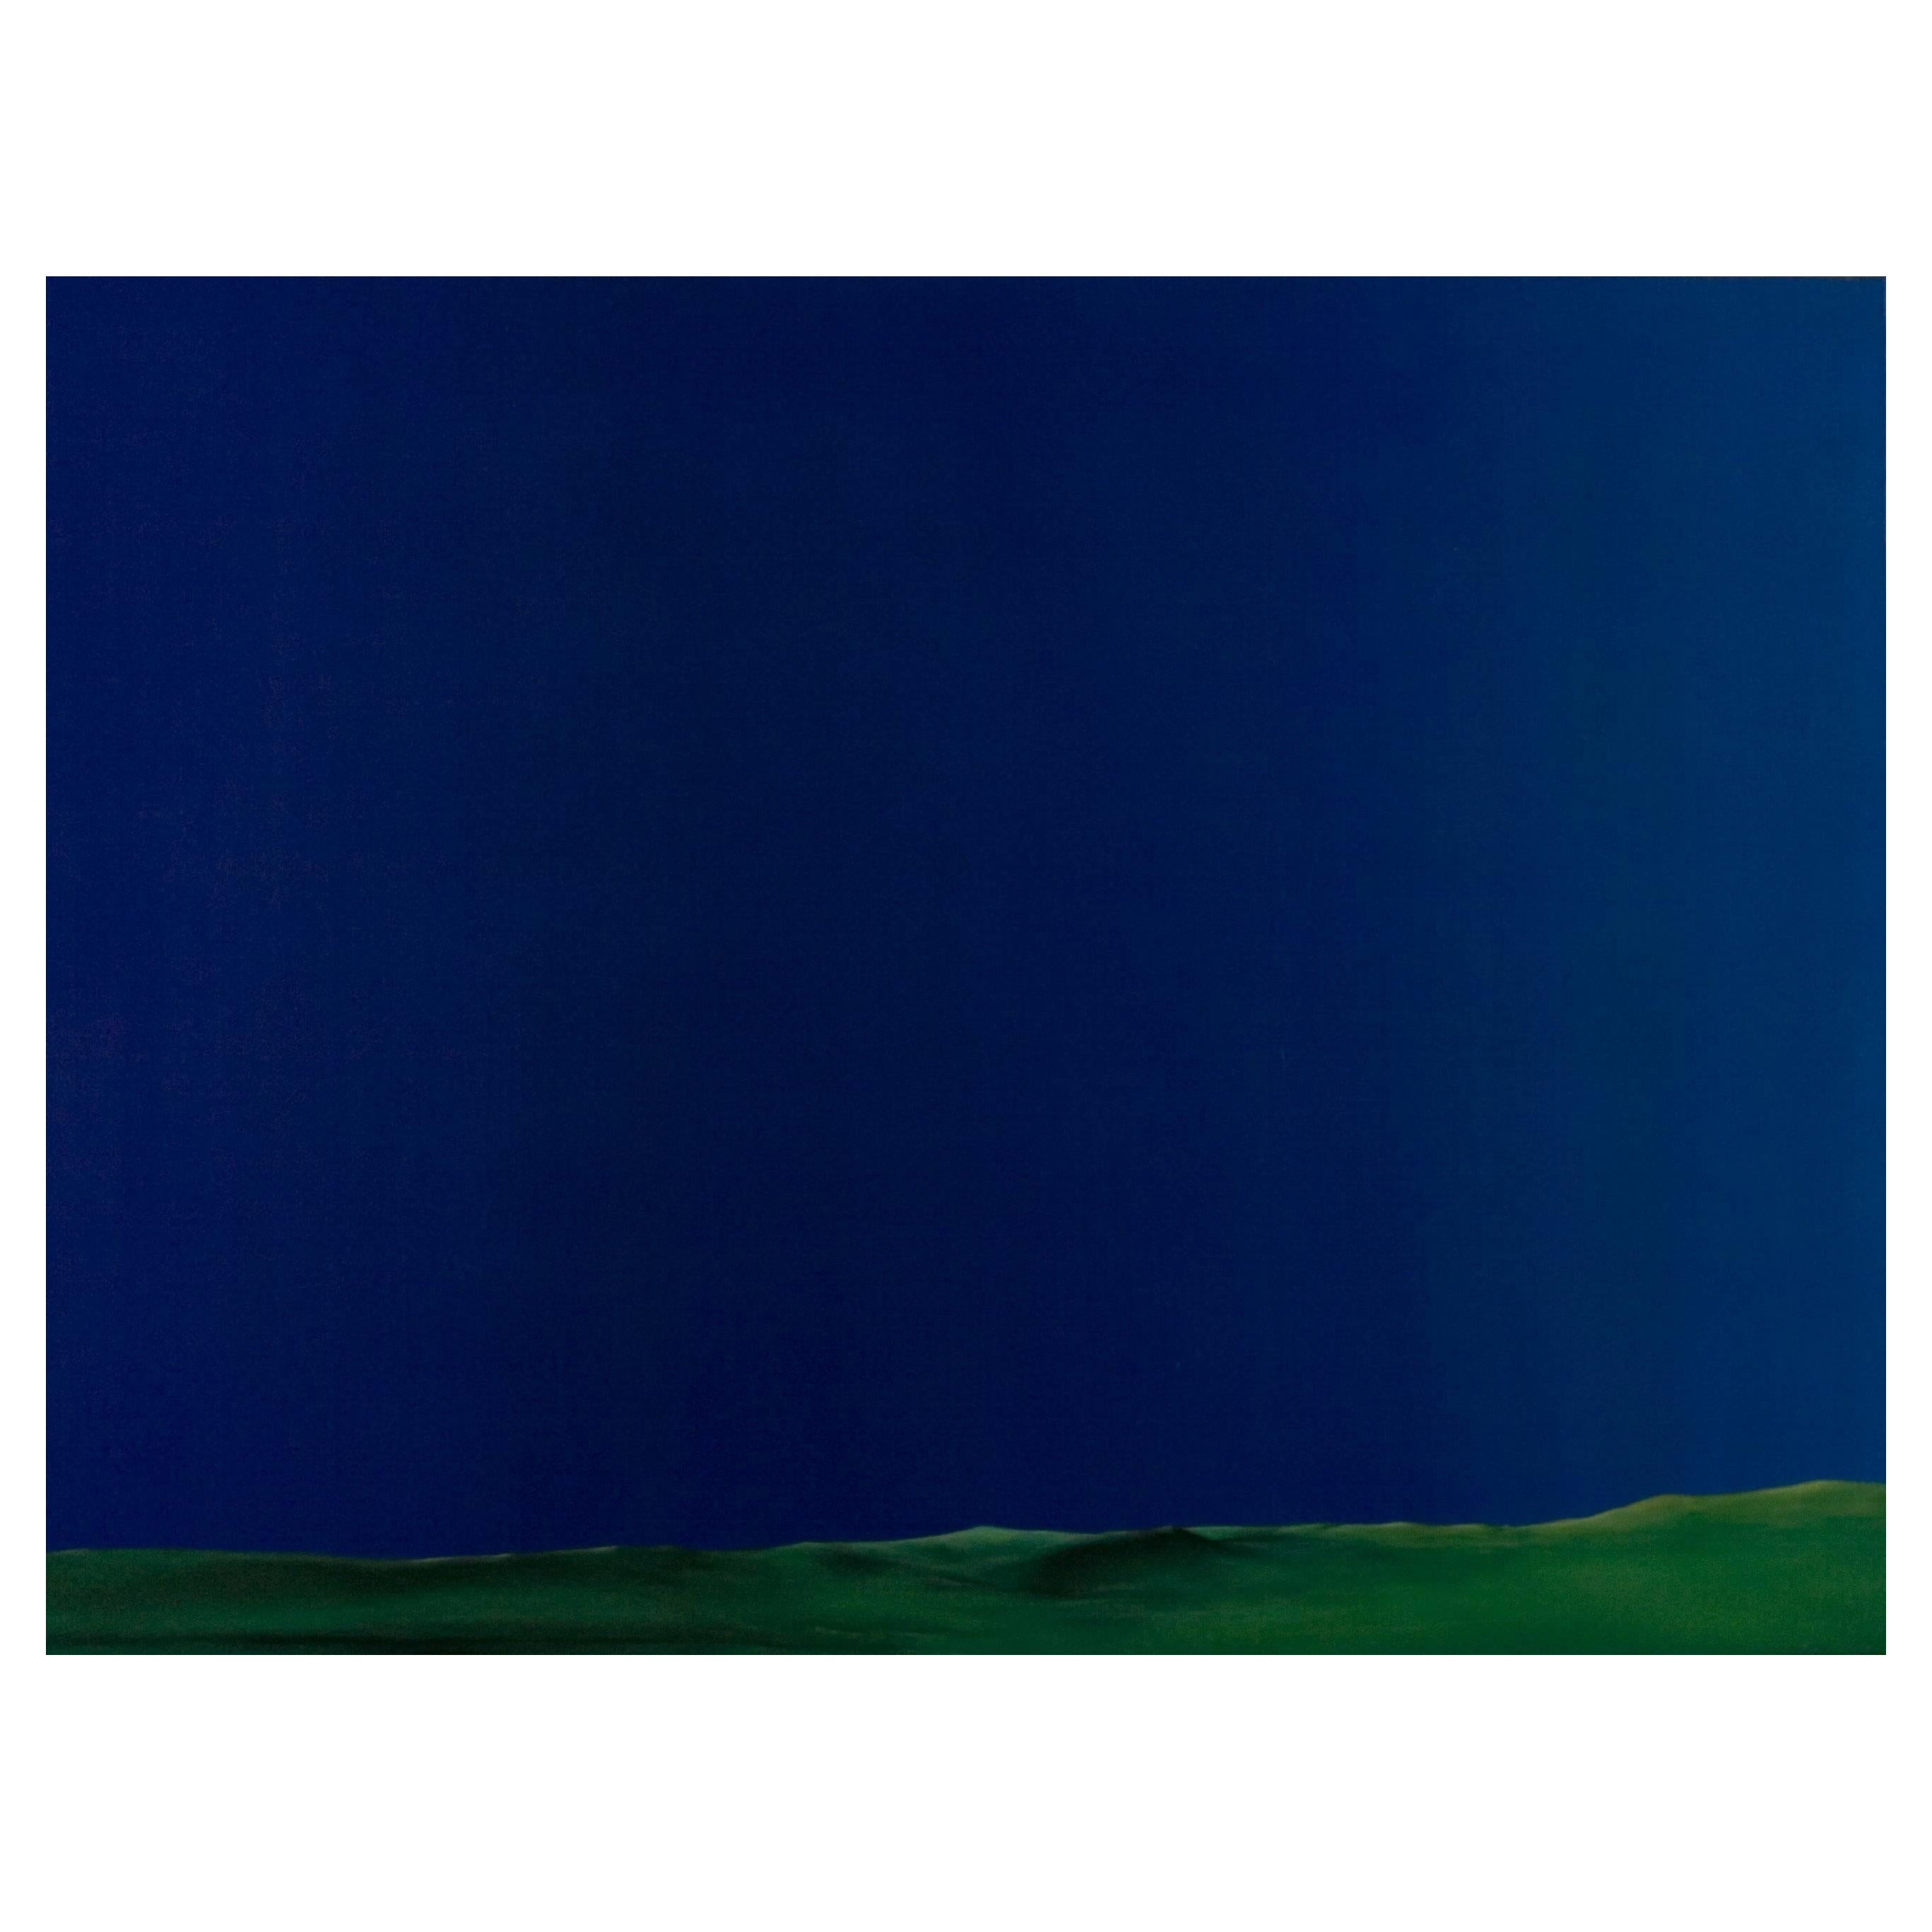 Cătălin Petrișor Figurative Painting – Chroma sky (Blue key) 10 - Contemporary, Blau, Minimalistisch, Figurativ, Landschaft